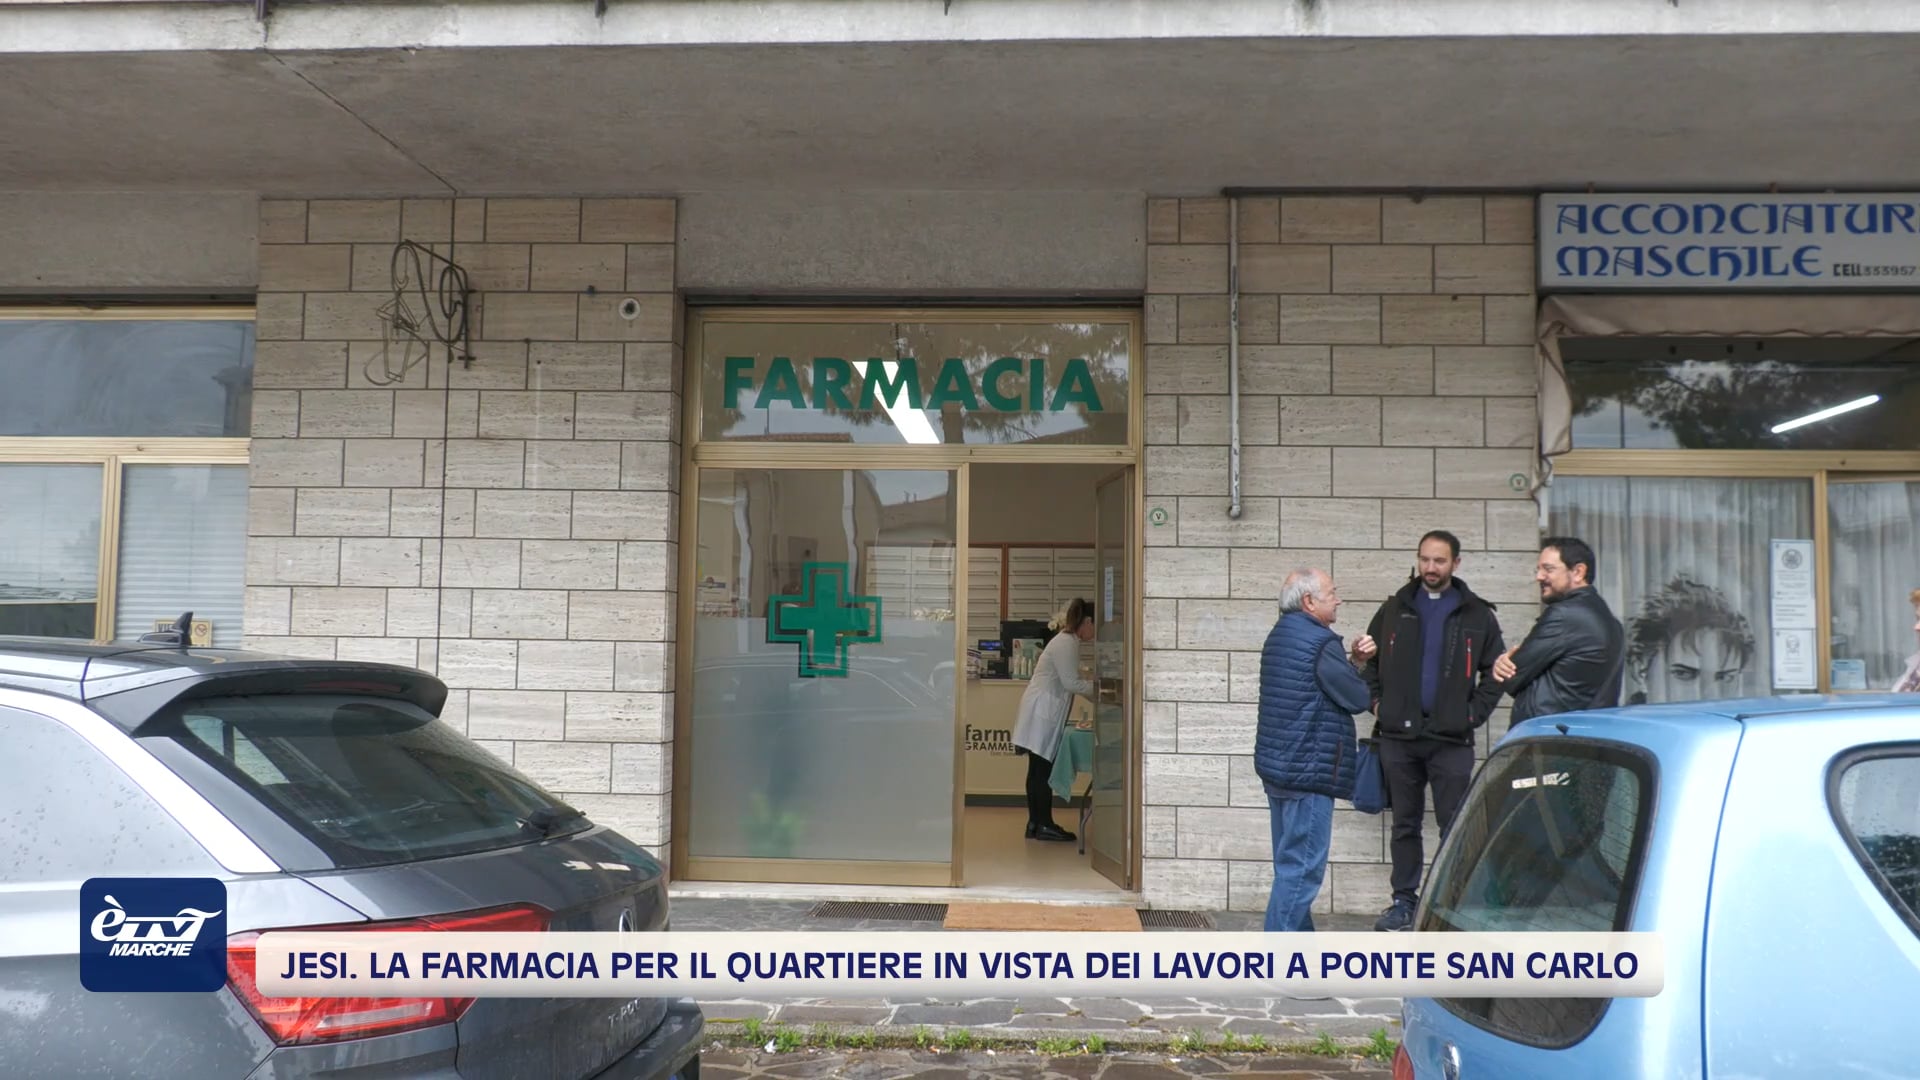 Jesi. La farmacia per il quartiere Minonna in vista dei lavori al Ponte San Carlo - VIDEO